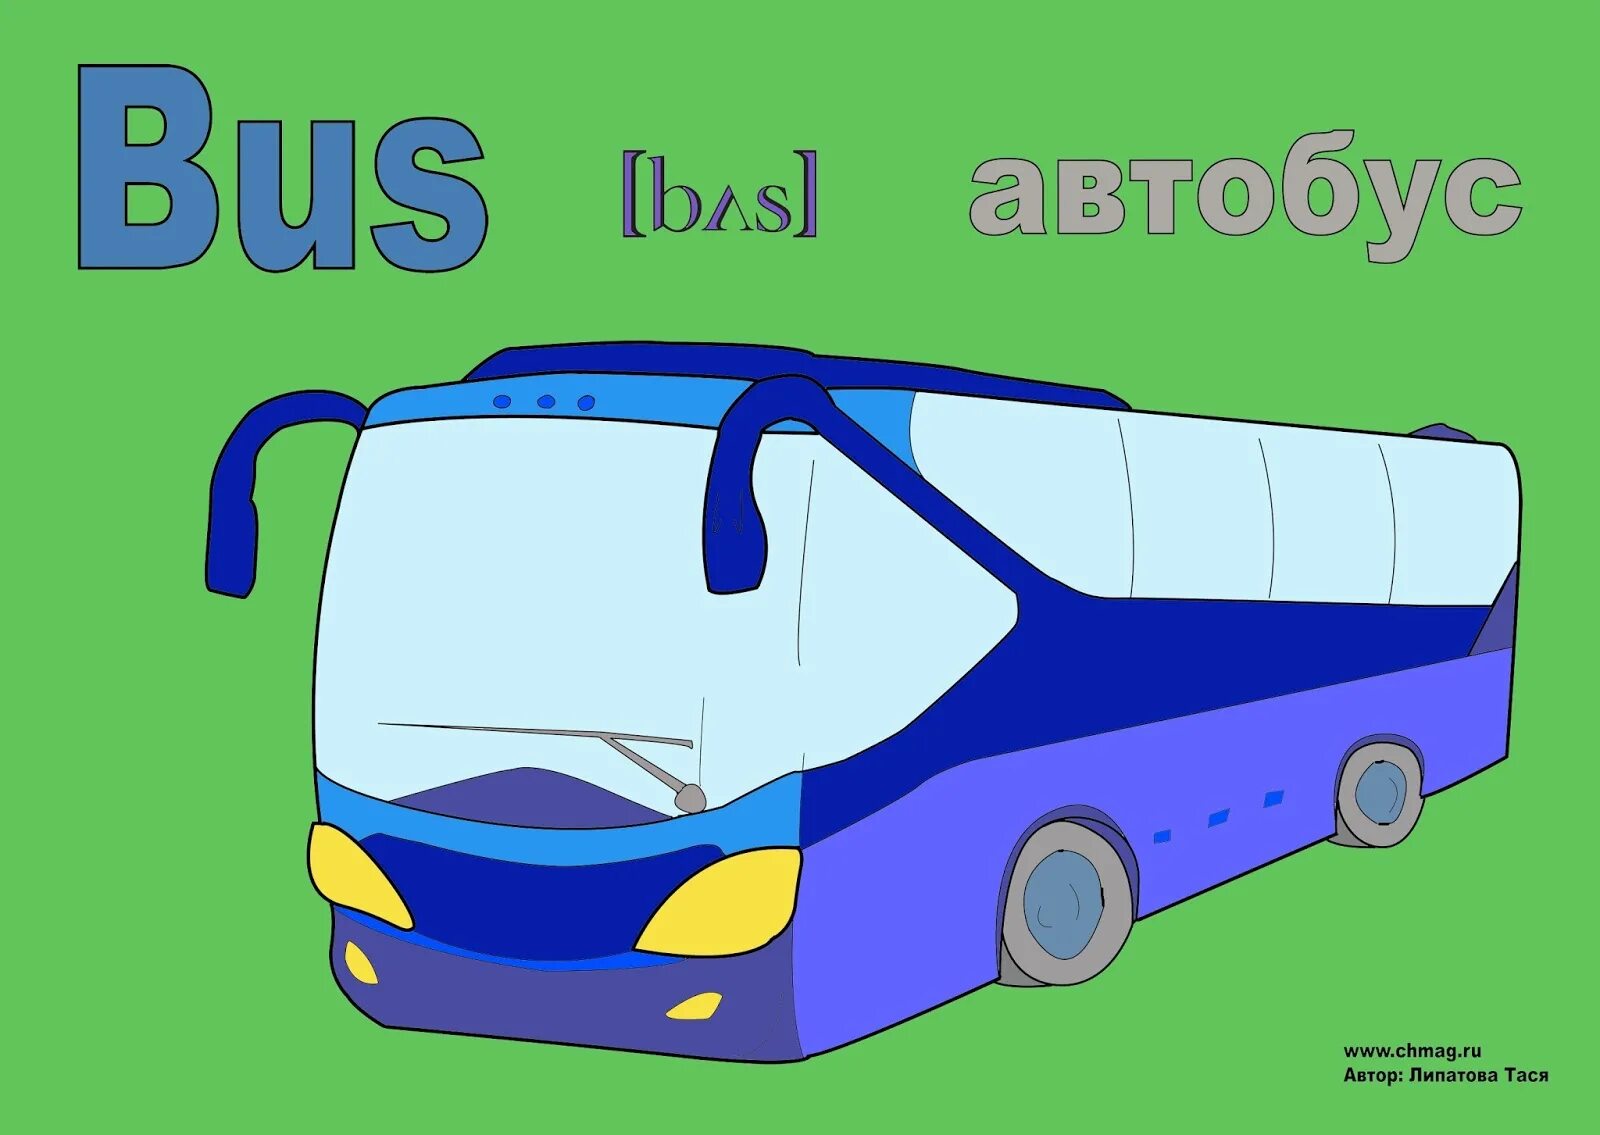 Машина транскрипция. Автобус картинка. Автобус на английском языке. Английское слово автобус. Автобус иллюстрация.